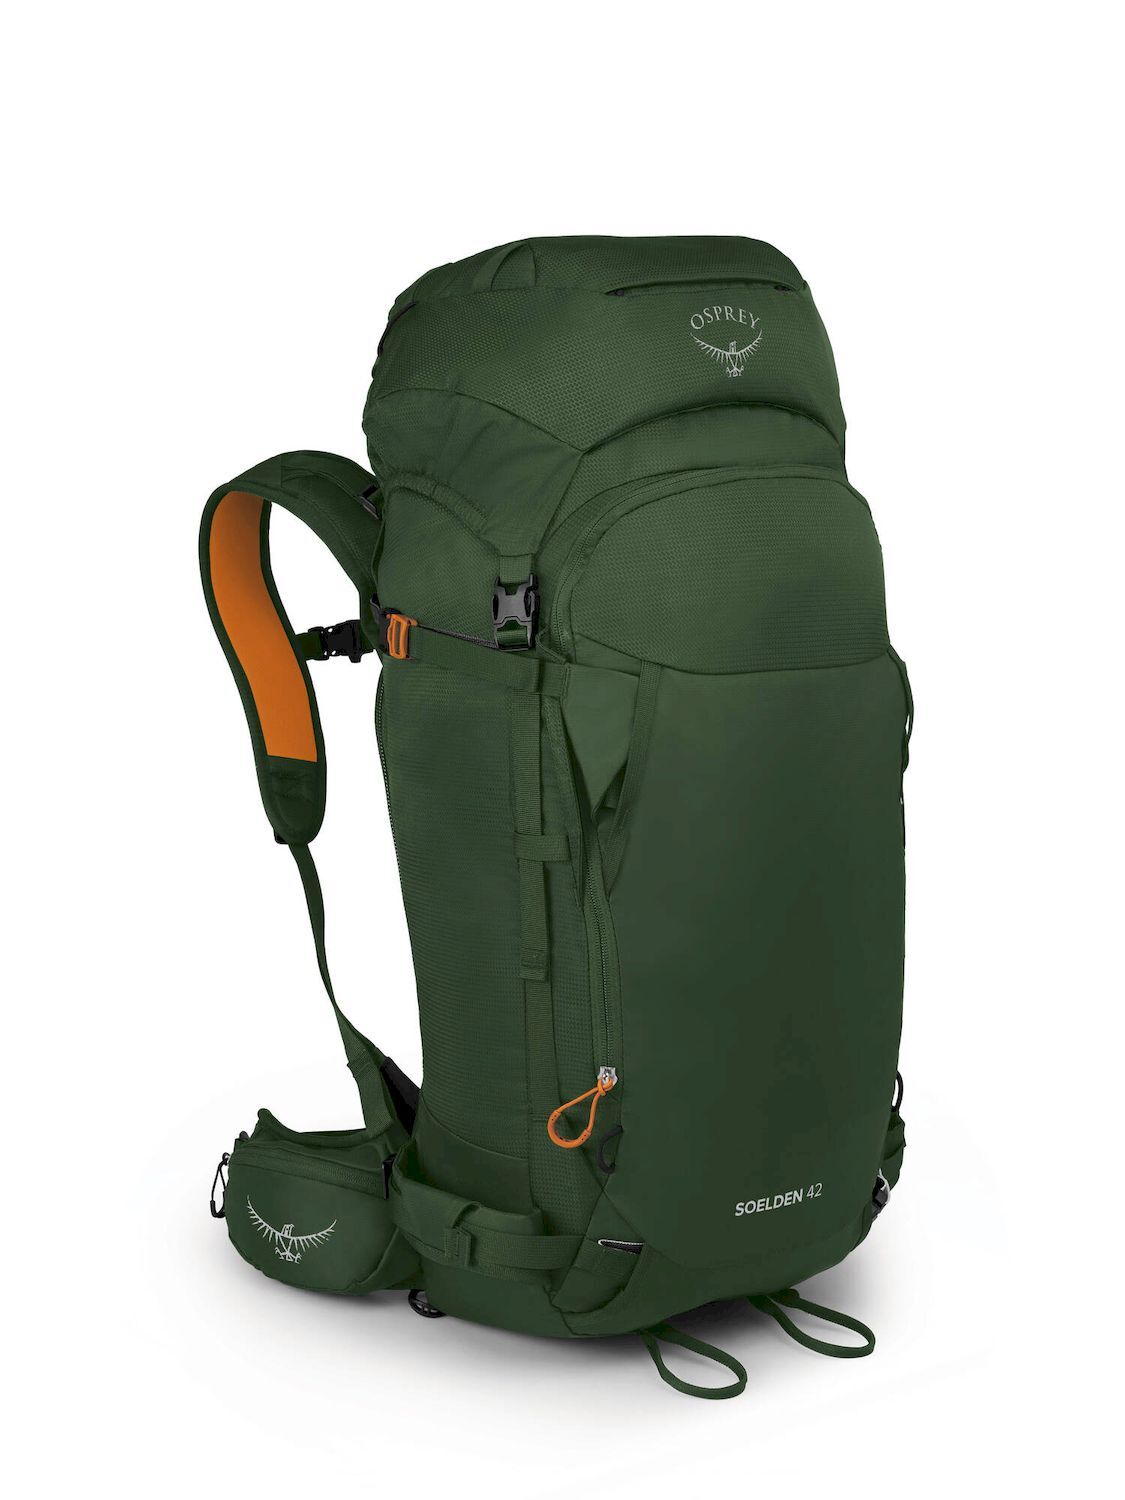 Osprey Soelden 42 - Ski backpack - Men's